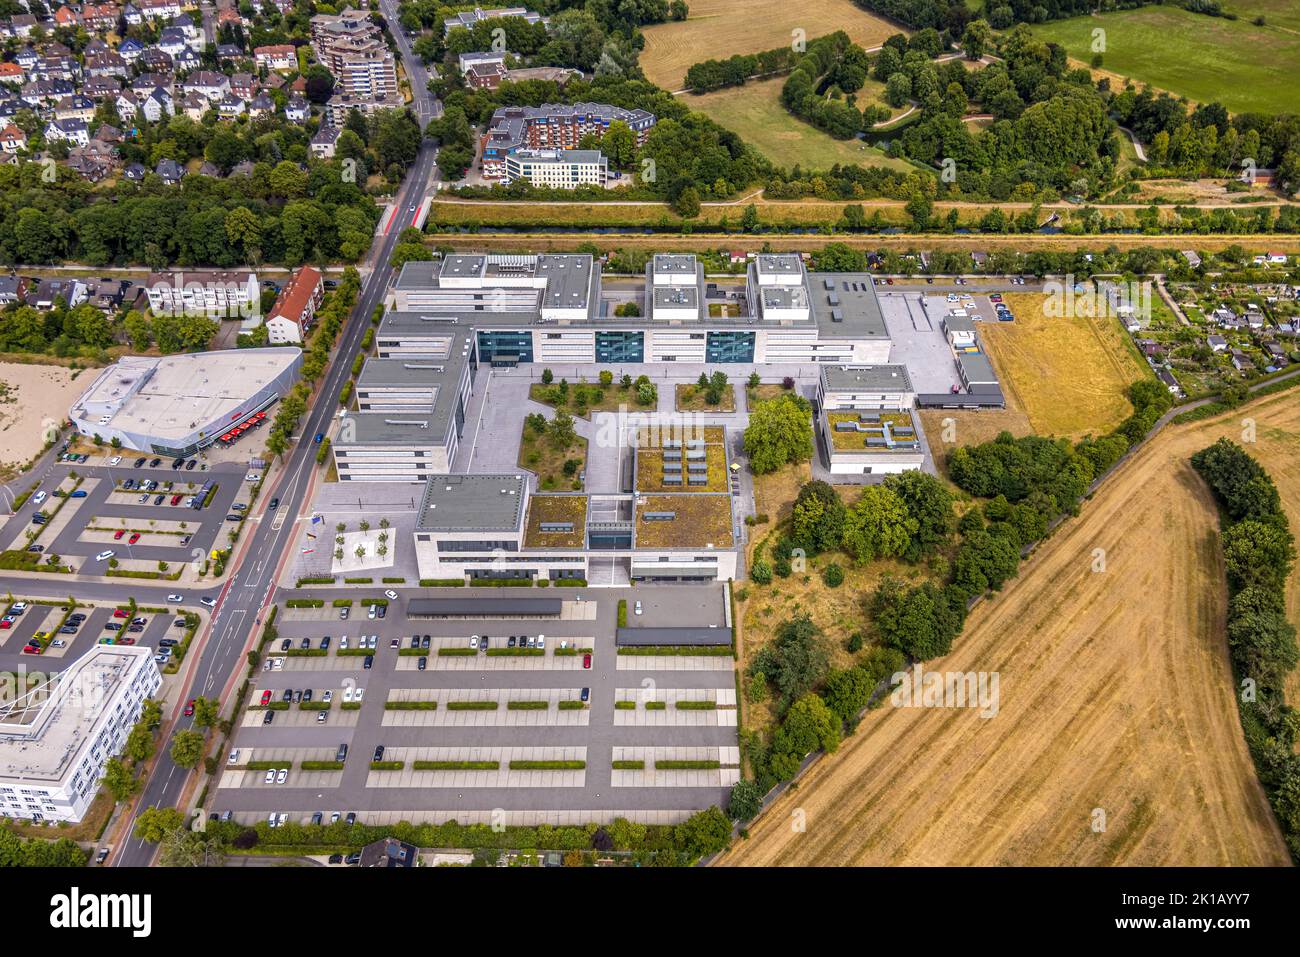 Vue aérienne, Université des sciences appliquées de Hamm-Lippstadt, HSHL, campus de Hamm, chantier et nouveau bâtiment WissenschaftQuartier SCI:Q Science Banque D'Images